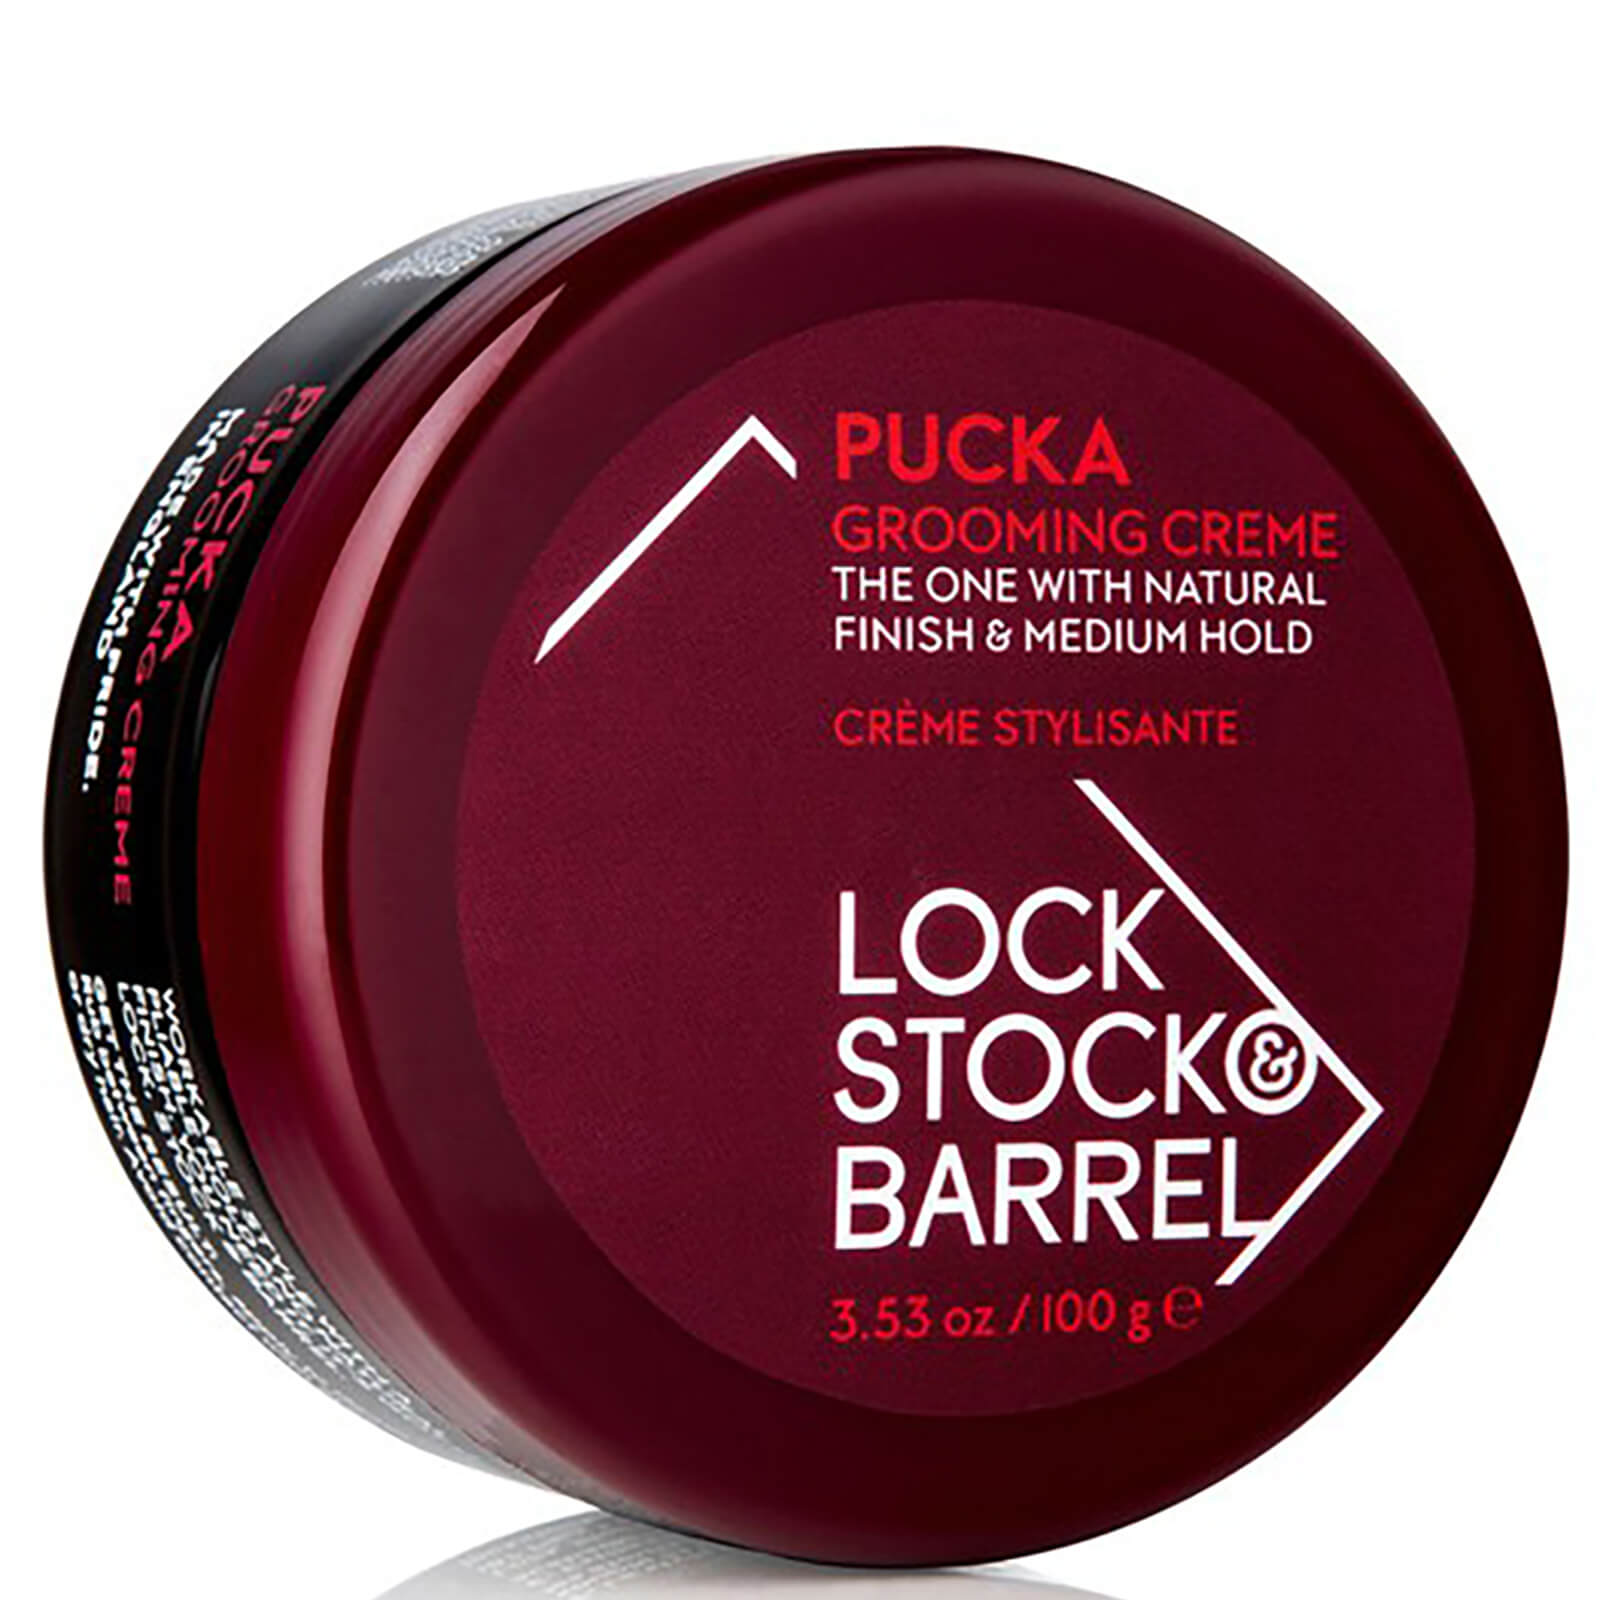 Crema de peinado Pucka de Lock Stock & Barrel (60 g)